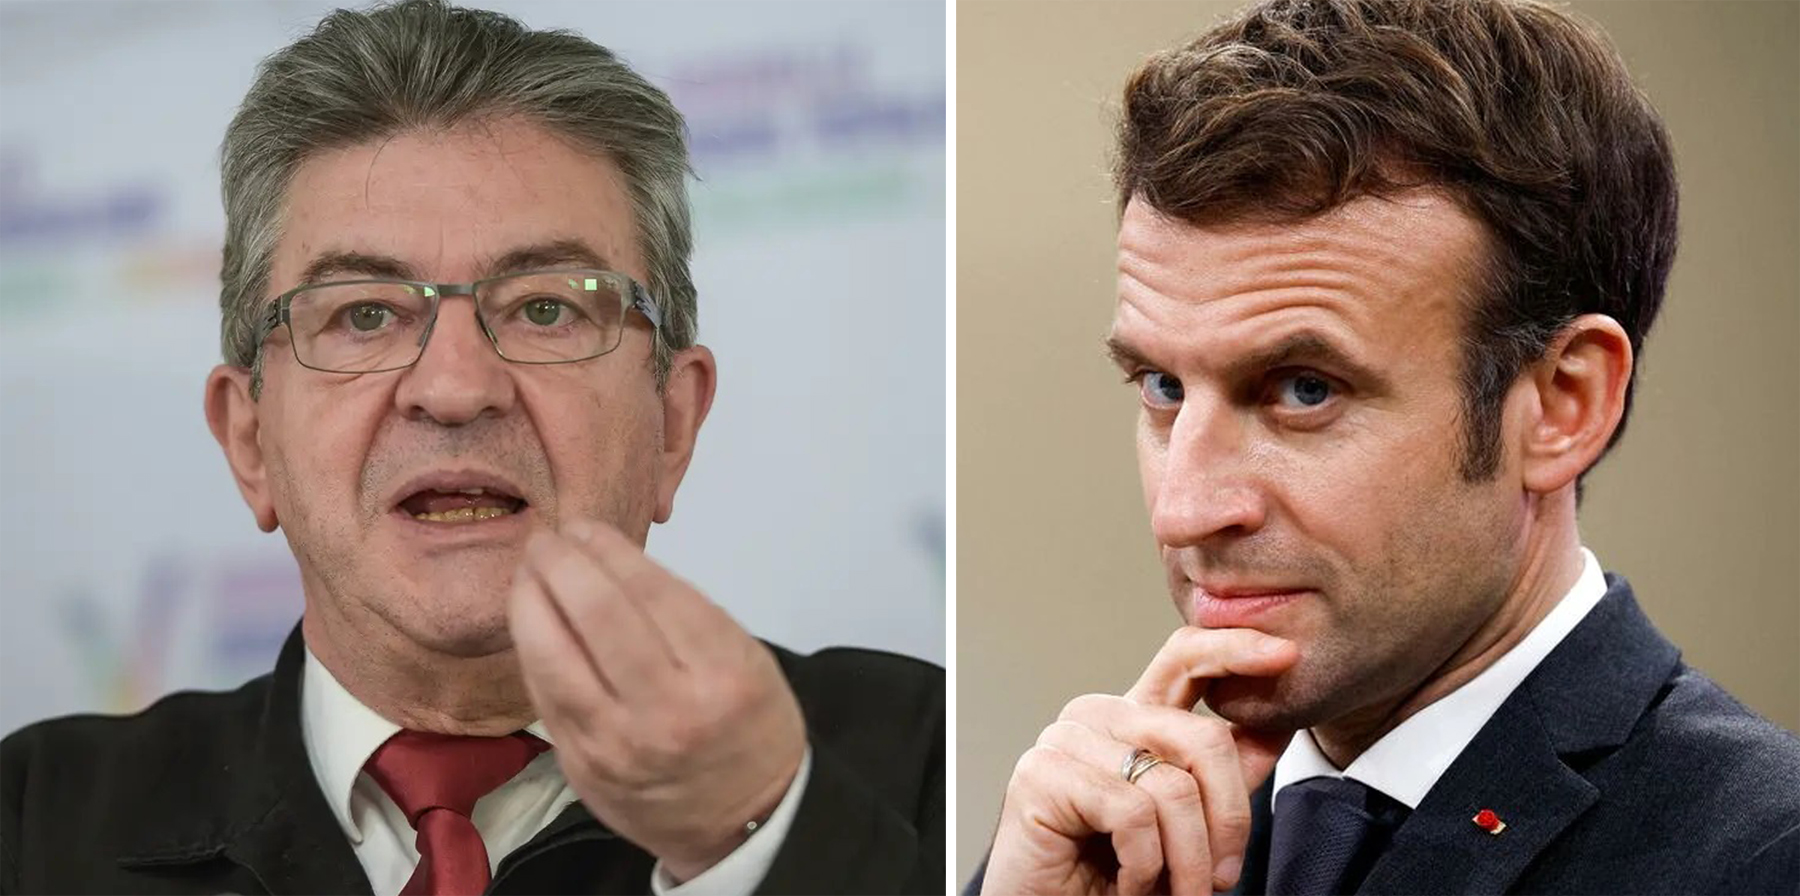 بعد تصدّره الجولة الأولى من الانتخابات التشريعية الفرنسية.. هل يطيح معسكر ميلونشون بحزب ماكرون؟